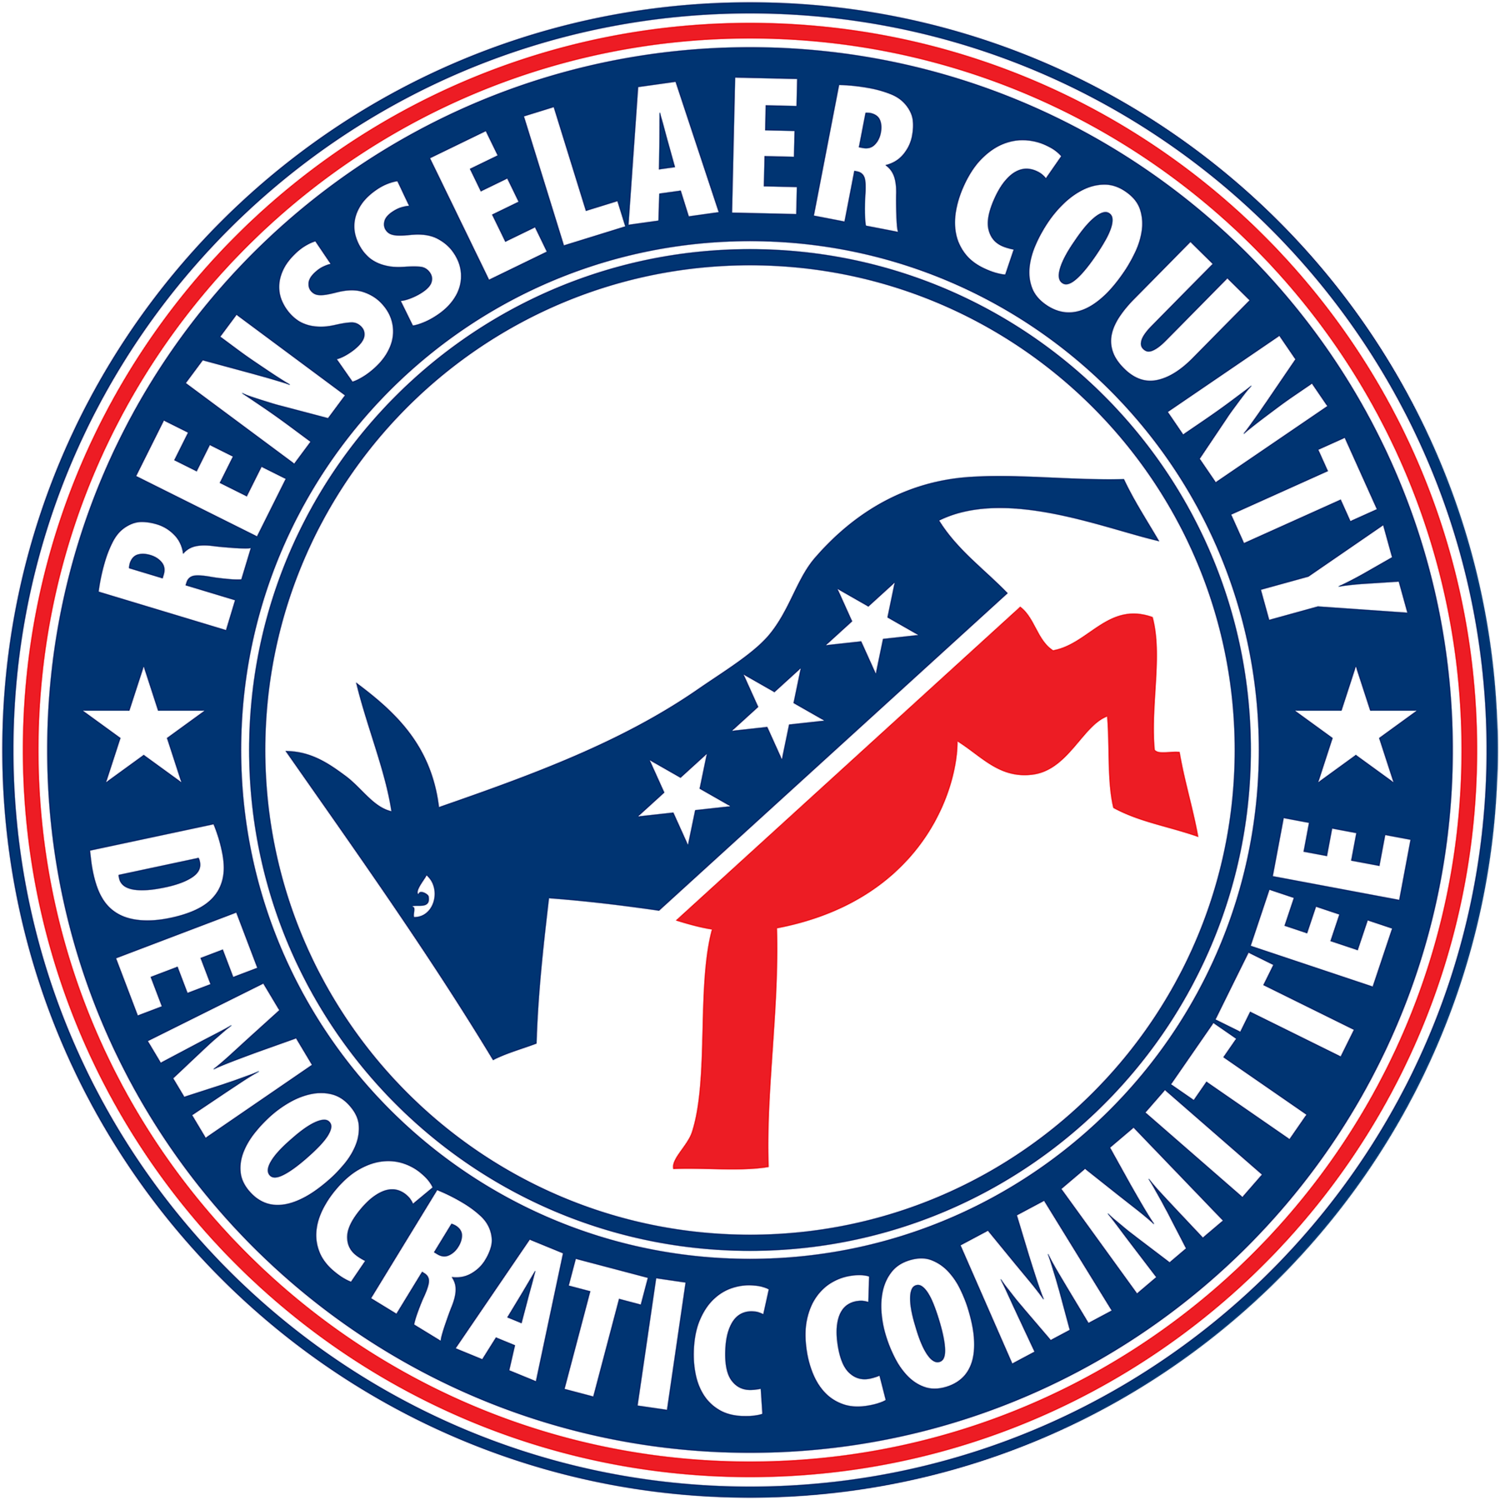 Rensselaer County Democratic Committee